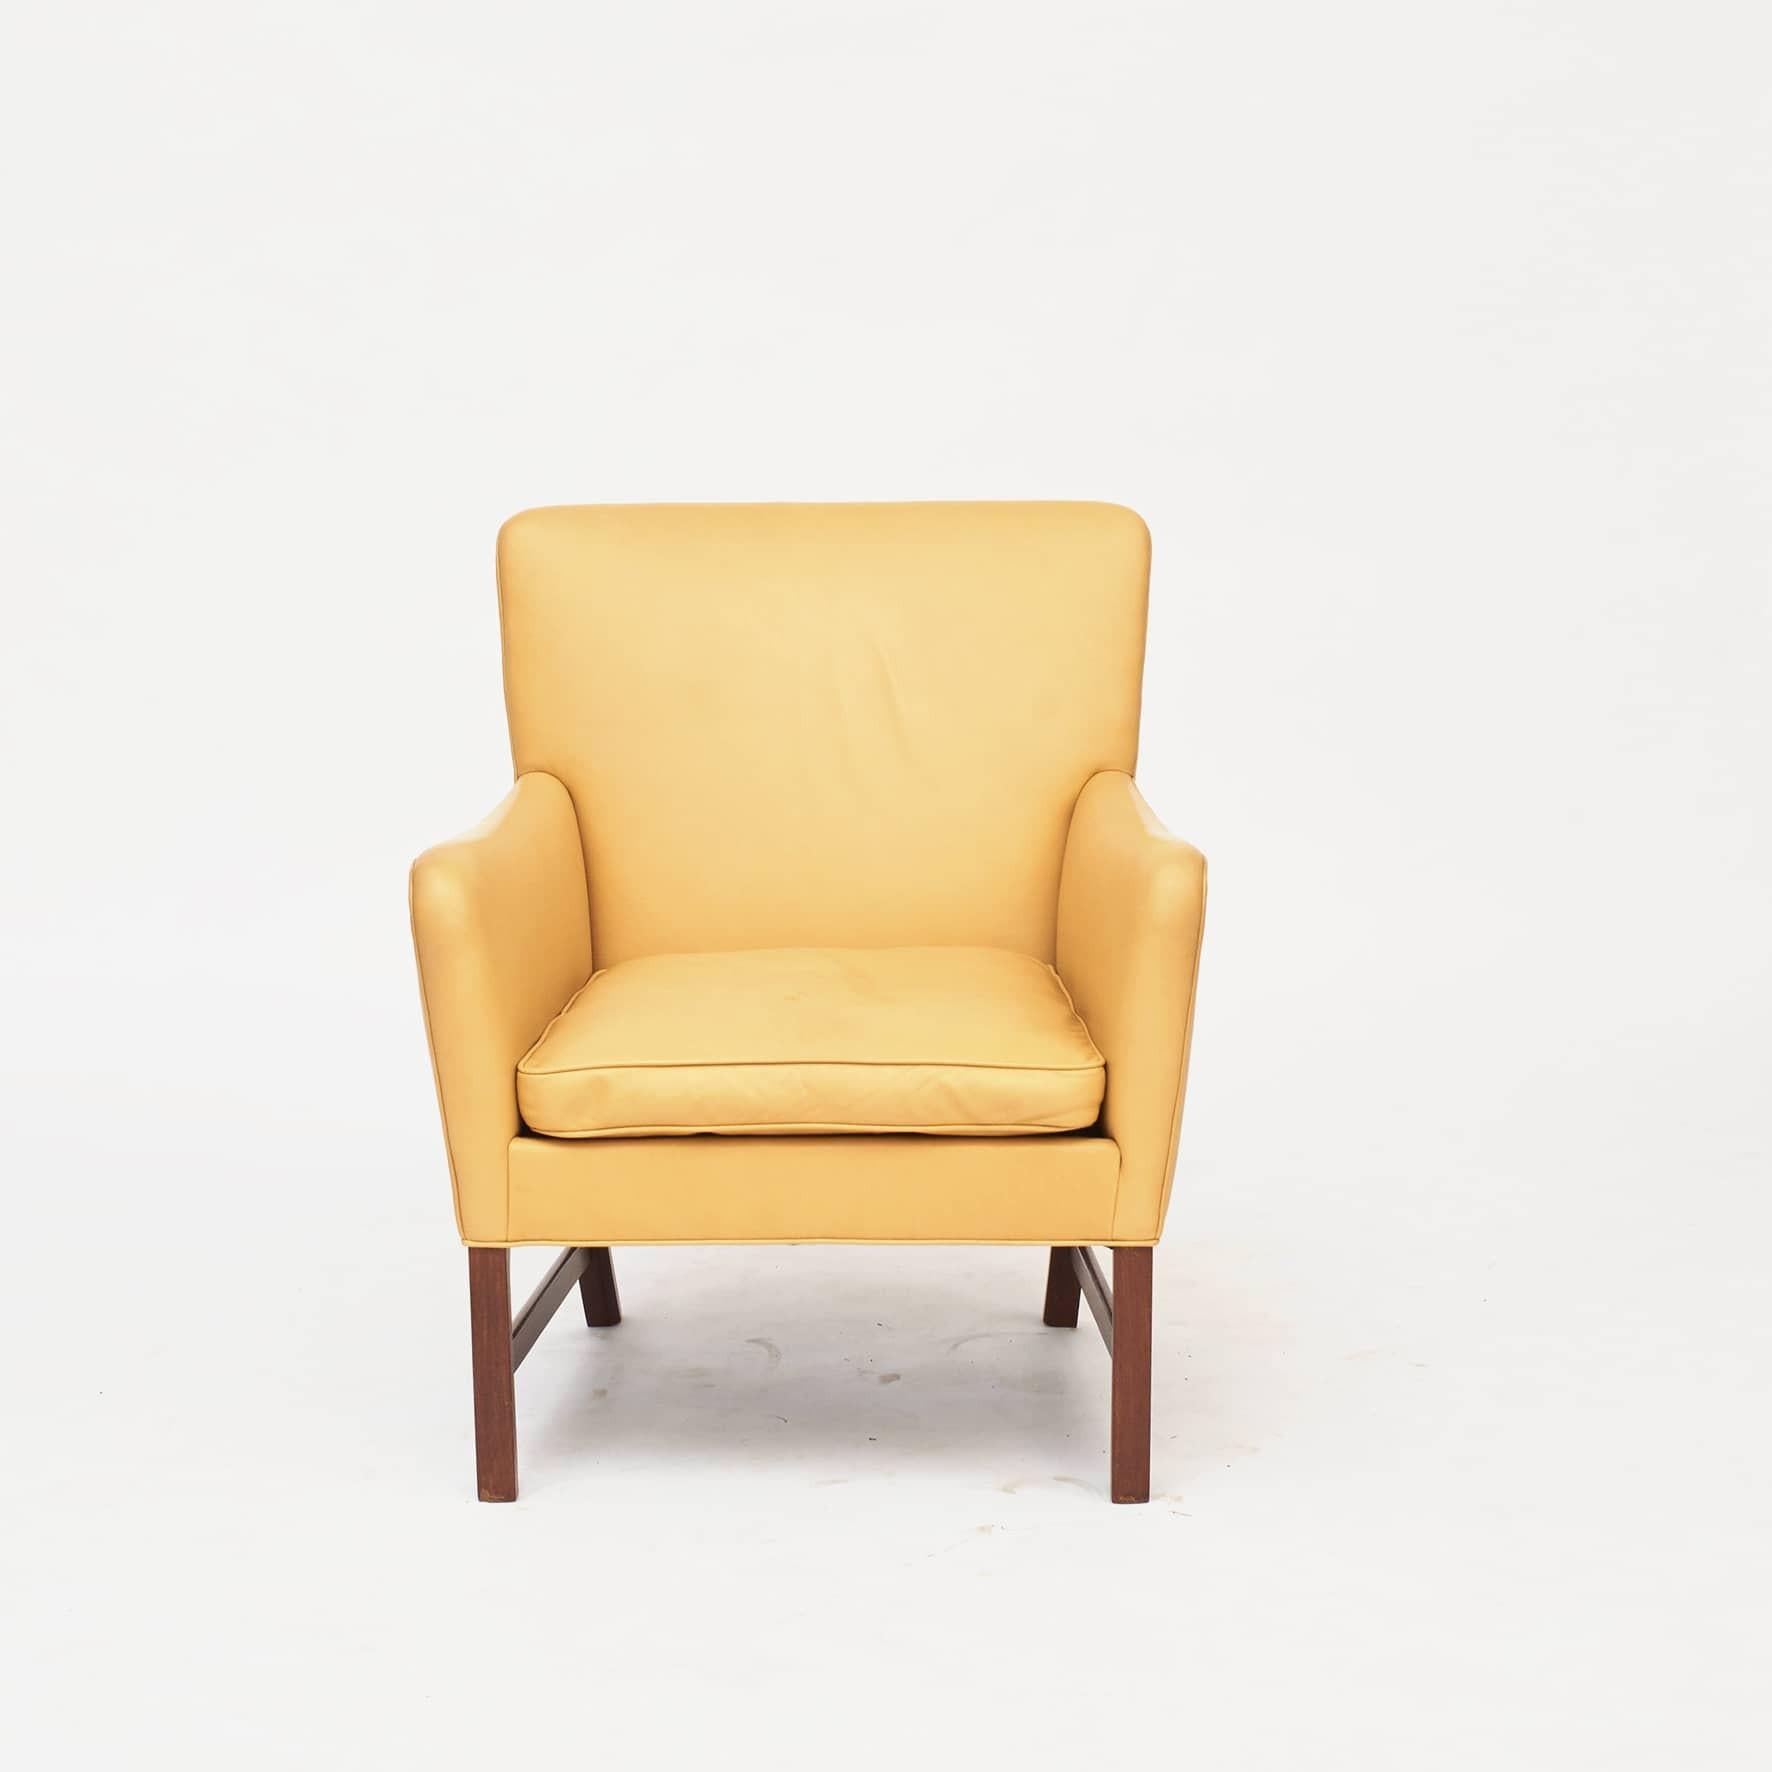 Ole Wanscher (1903-1985) Liegestuhl.
Sockel und Rahmen aus Mahagoni mit Bahre, die die Beine trägt. Später mit sandfarbenem Leder bezogen, Sitzkissen mit Daunenfüllung.

Entworfen von Ole Wanscher im Jahr 1960 und ausgeführt von Tischlermeister